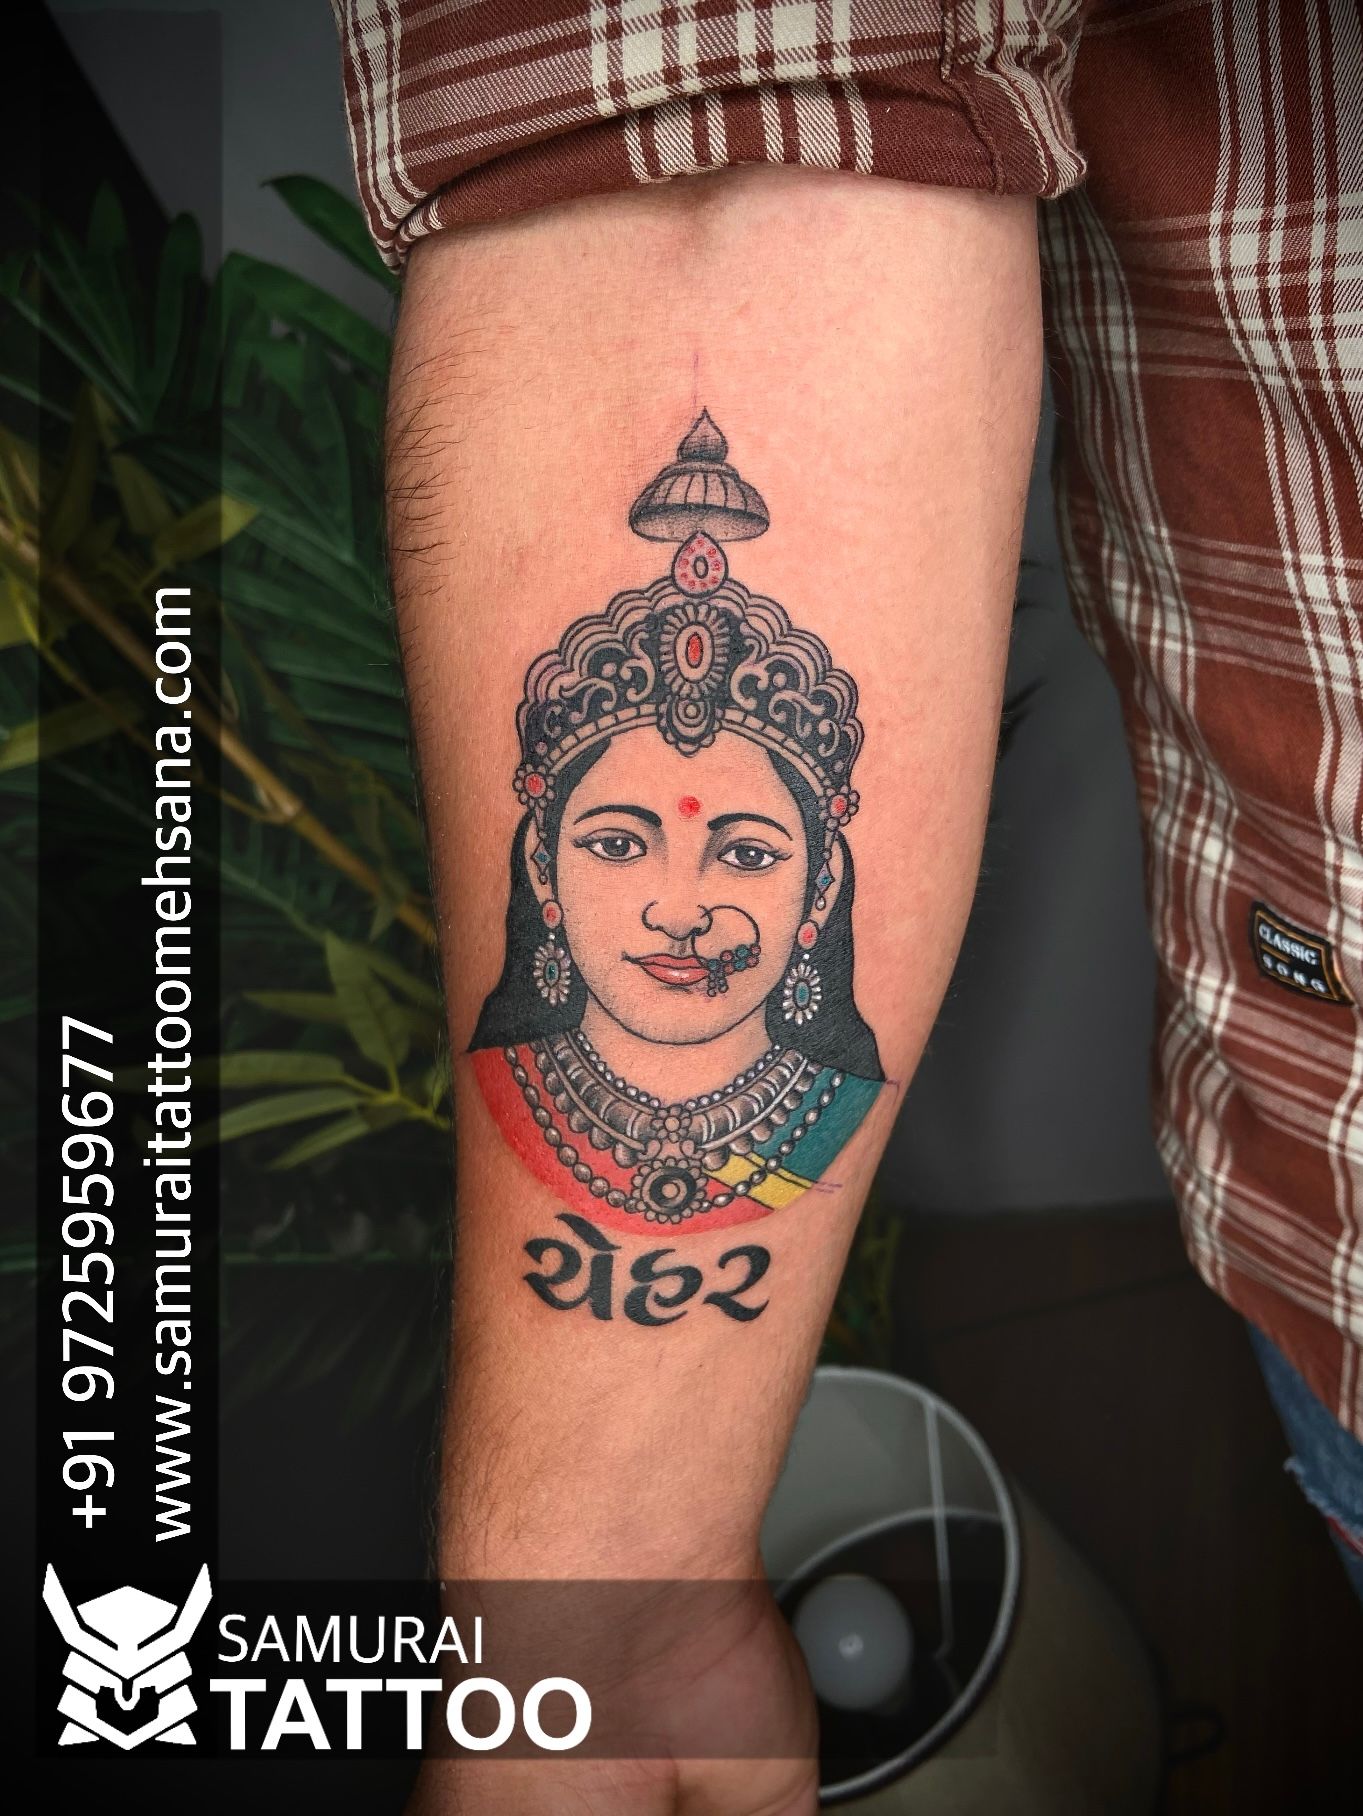 Jahu Maa tattoo | jahu tattoo | jahu Maa new status 2021 |samurai tattoo  Mehsana - YouTube